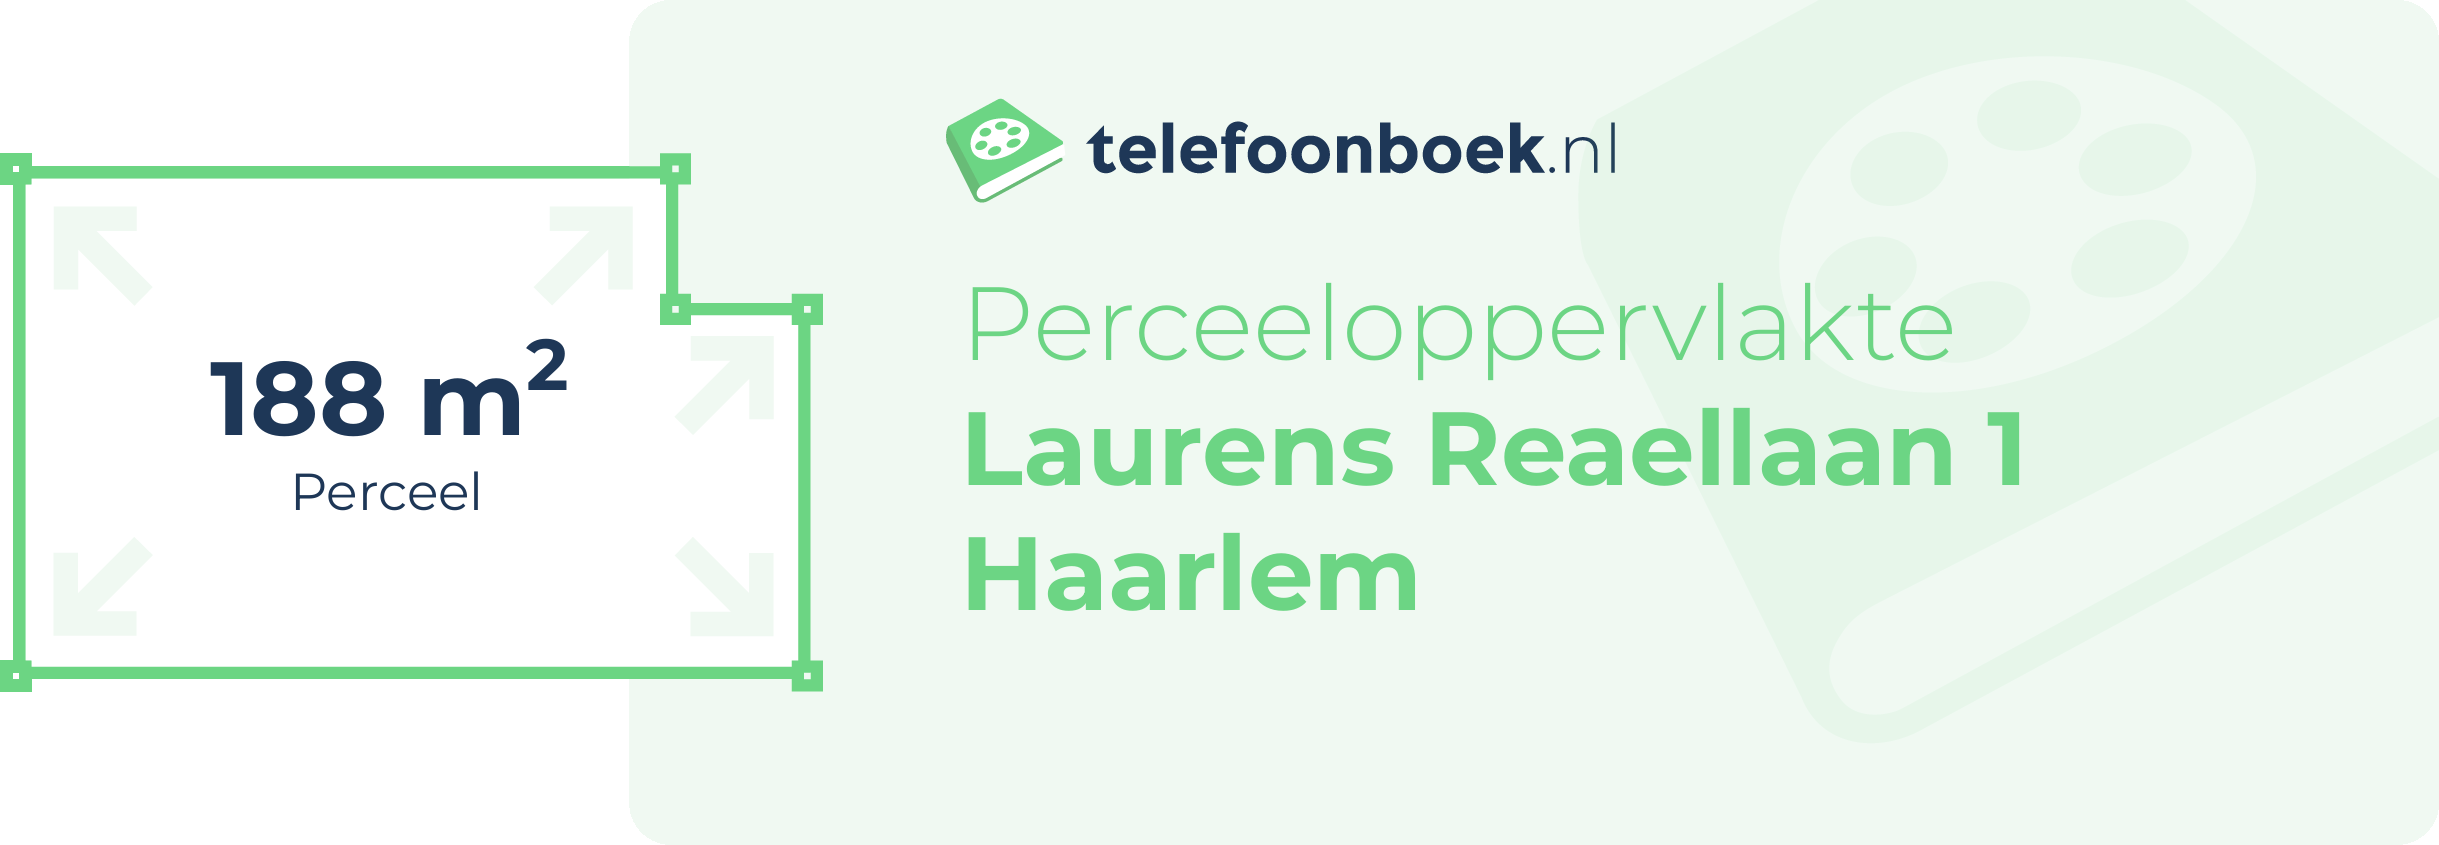 Perceeloppervlakte Laurens Reaellaan 1 Haarlem